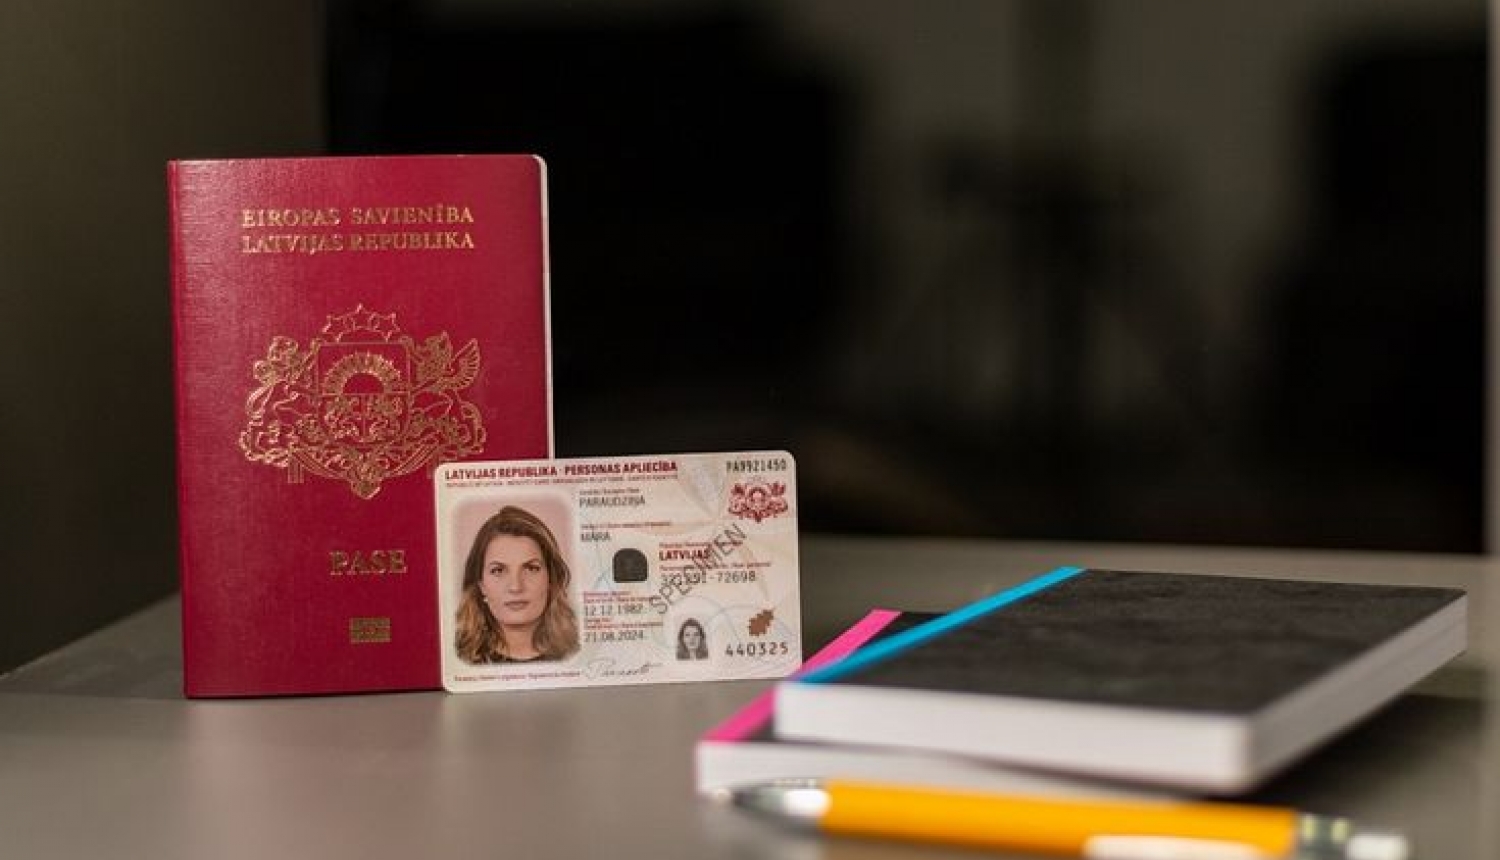 Personas apliecība jeb eID karte būs obligāta tad, kad beigsies pases derīguma termiņš